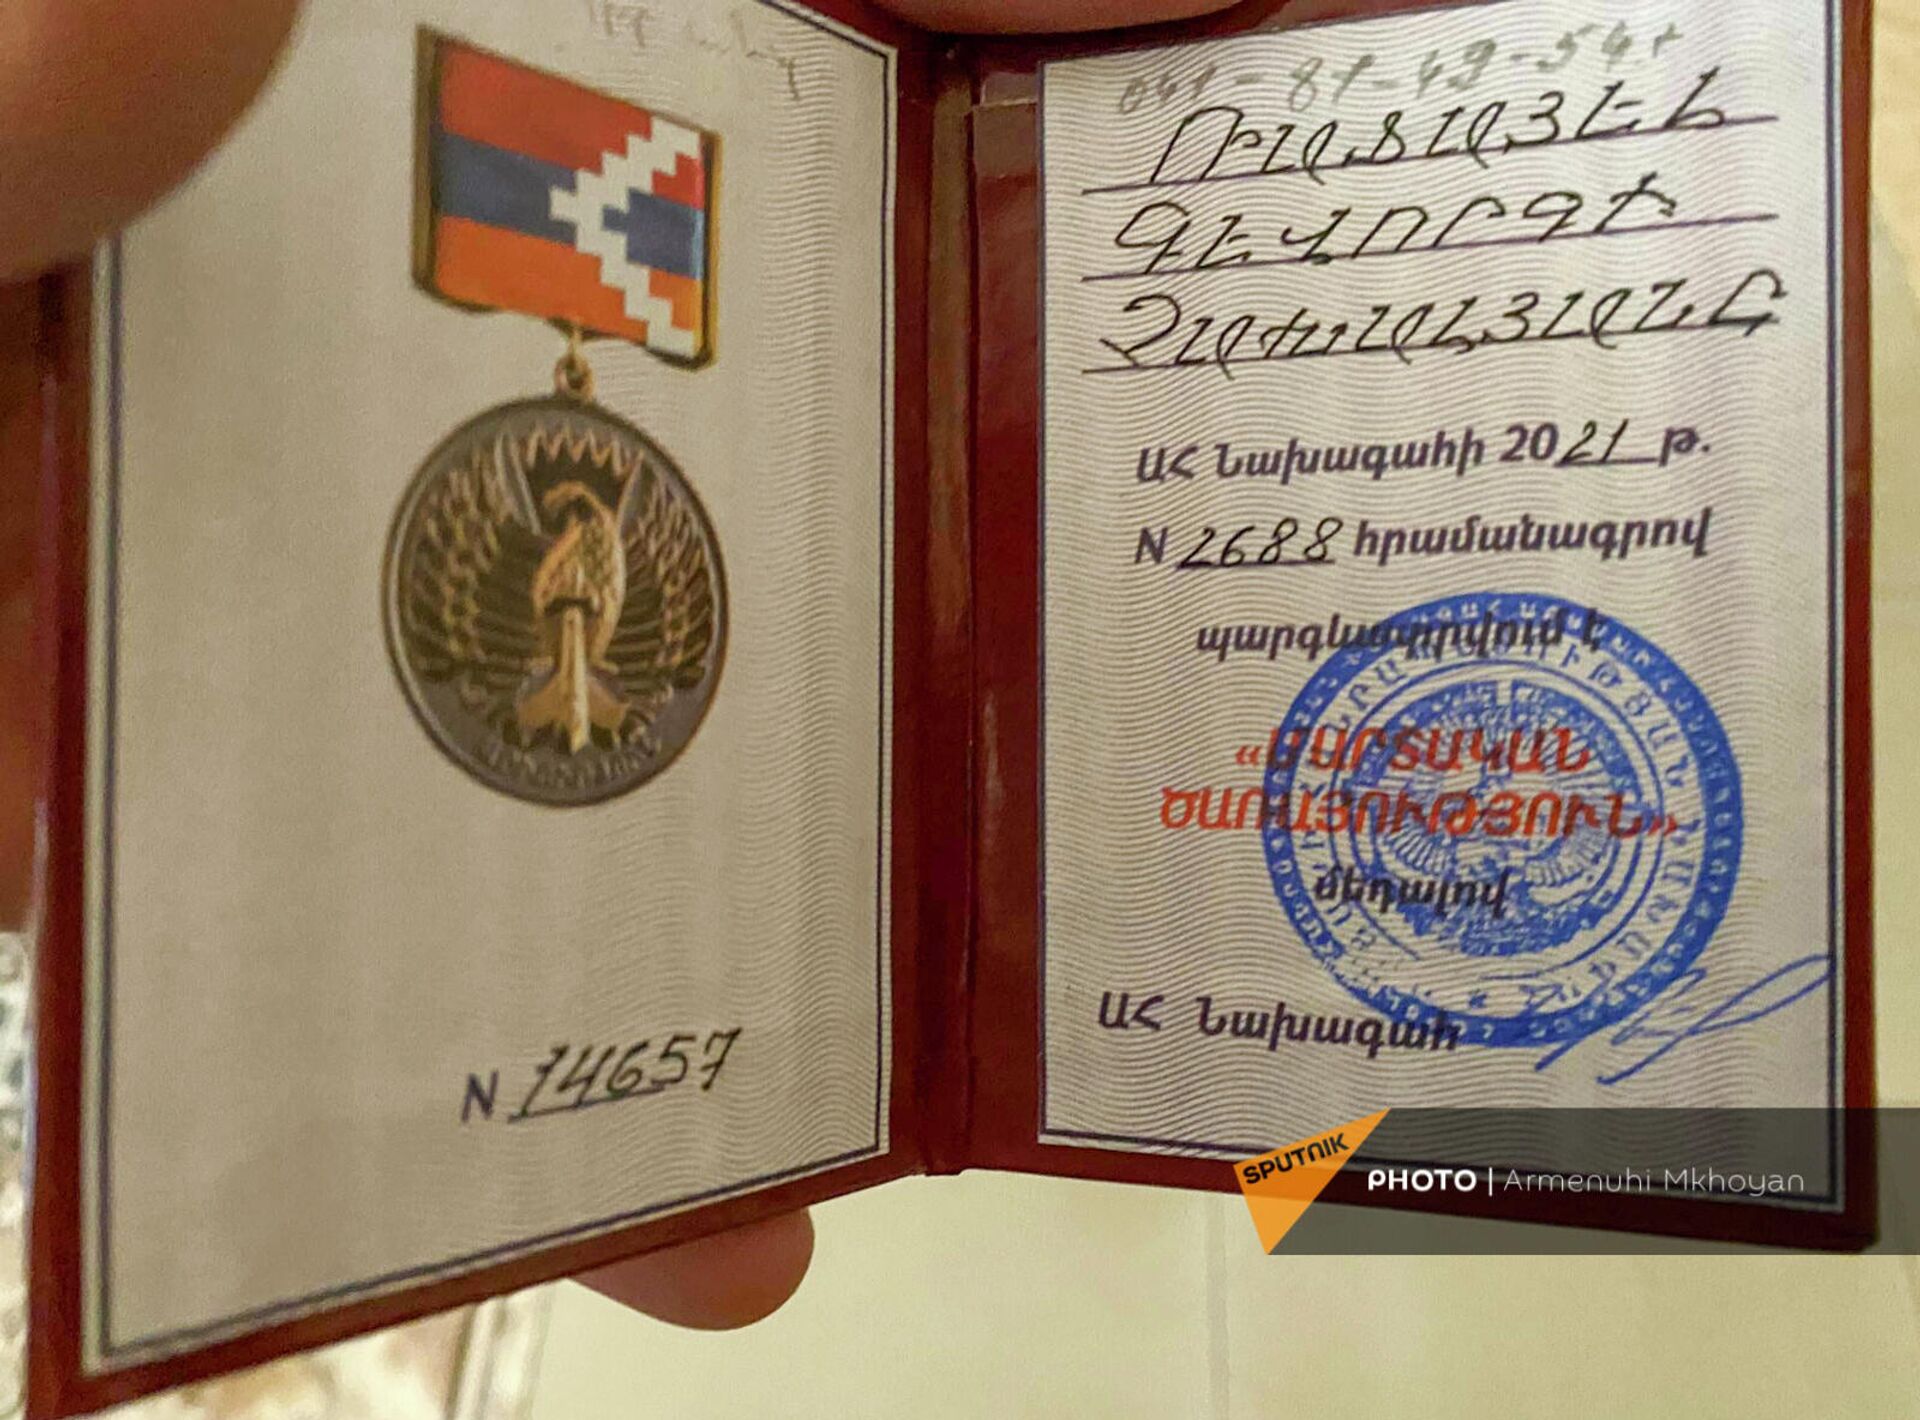 Паспорт медали Рафаэля Чахаляна, награжденного президентом Карабаха медалью Боевая служба - Sputnik Արմենիա, 1920, 21.09.2021